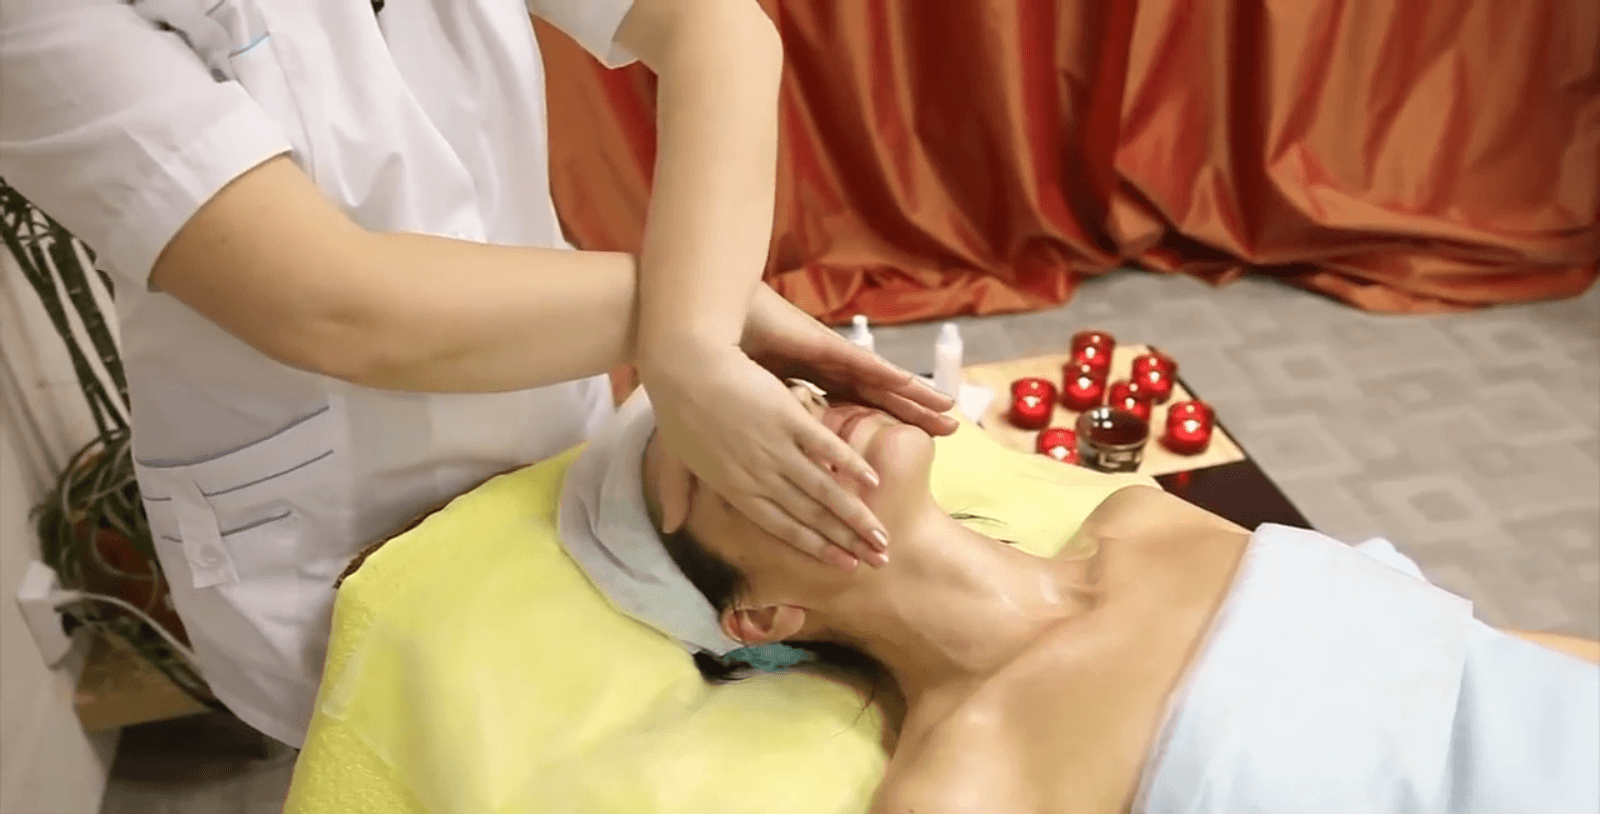 Испанский массаж лица — насколько эффективна эта техника